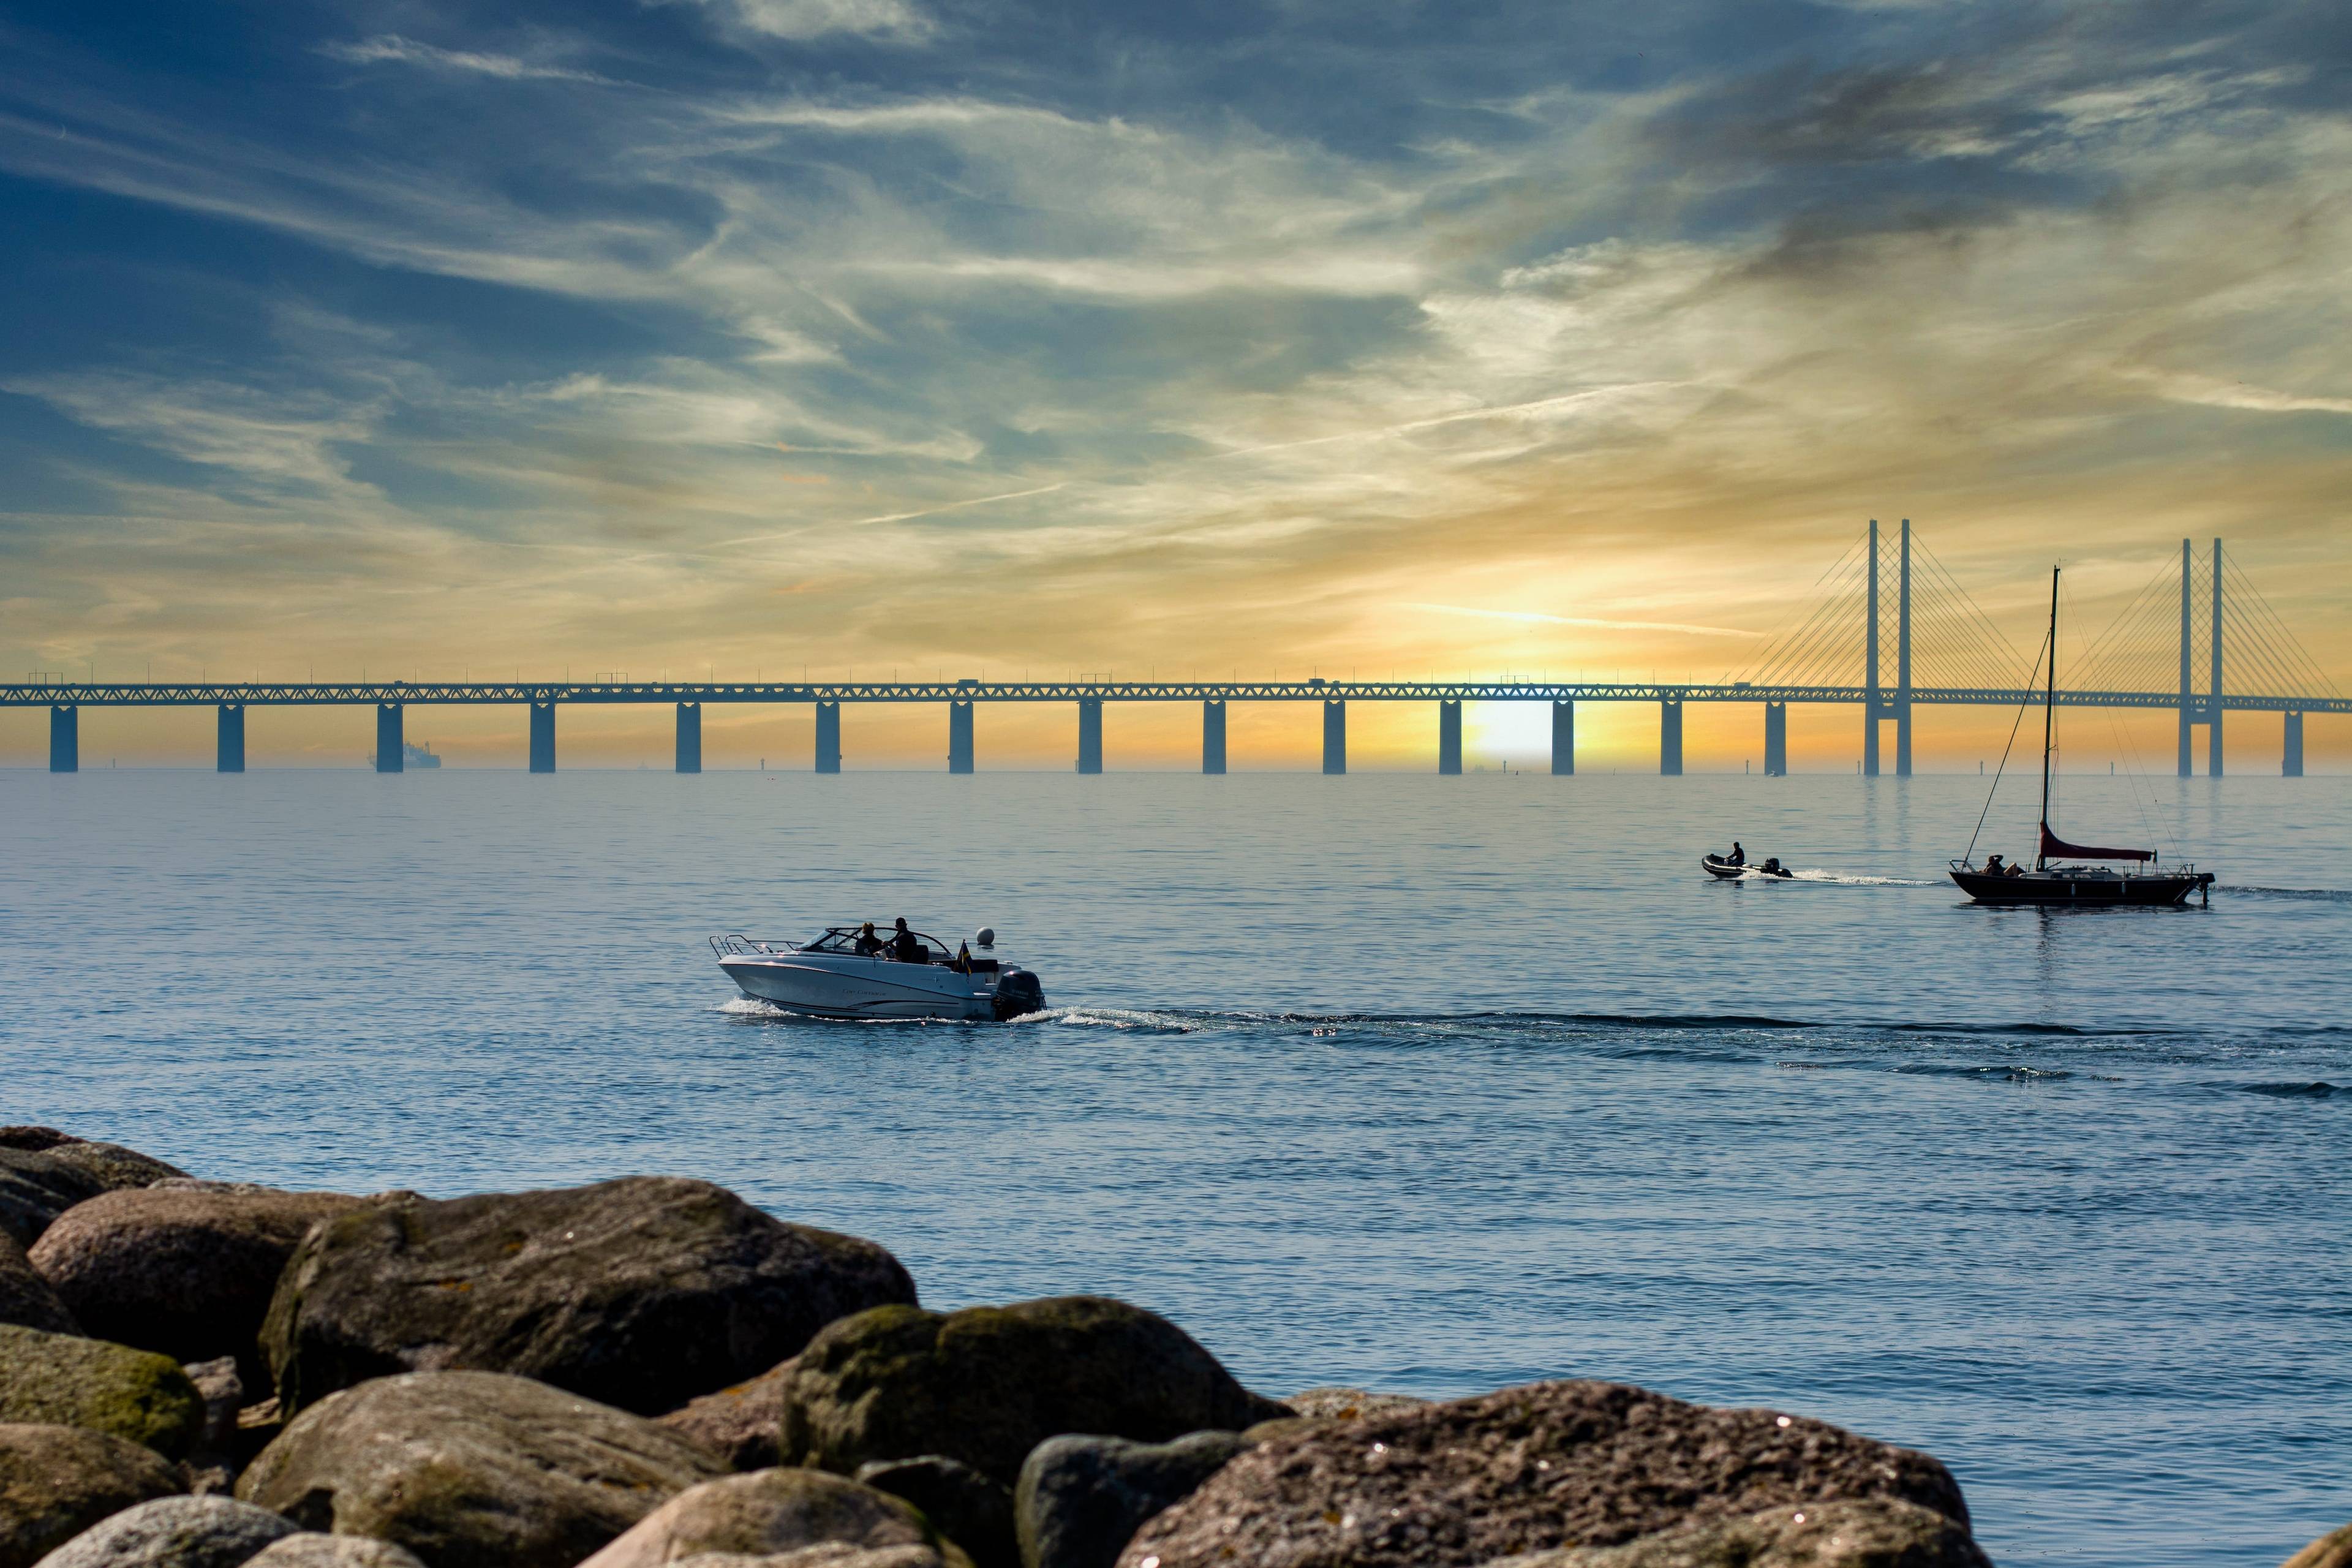  Øresund Bridge Viewpoint